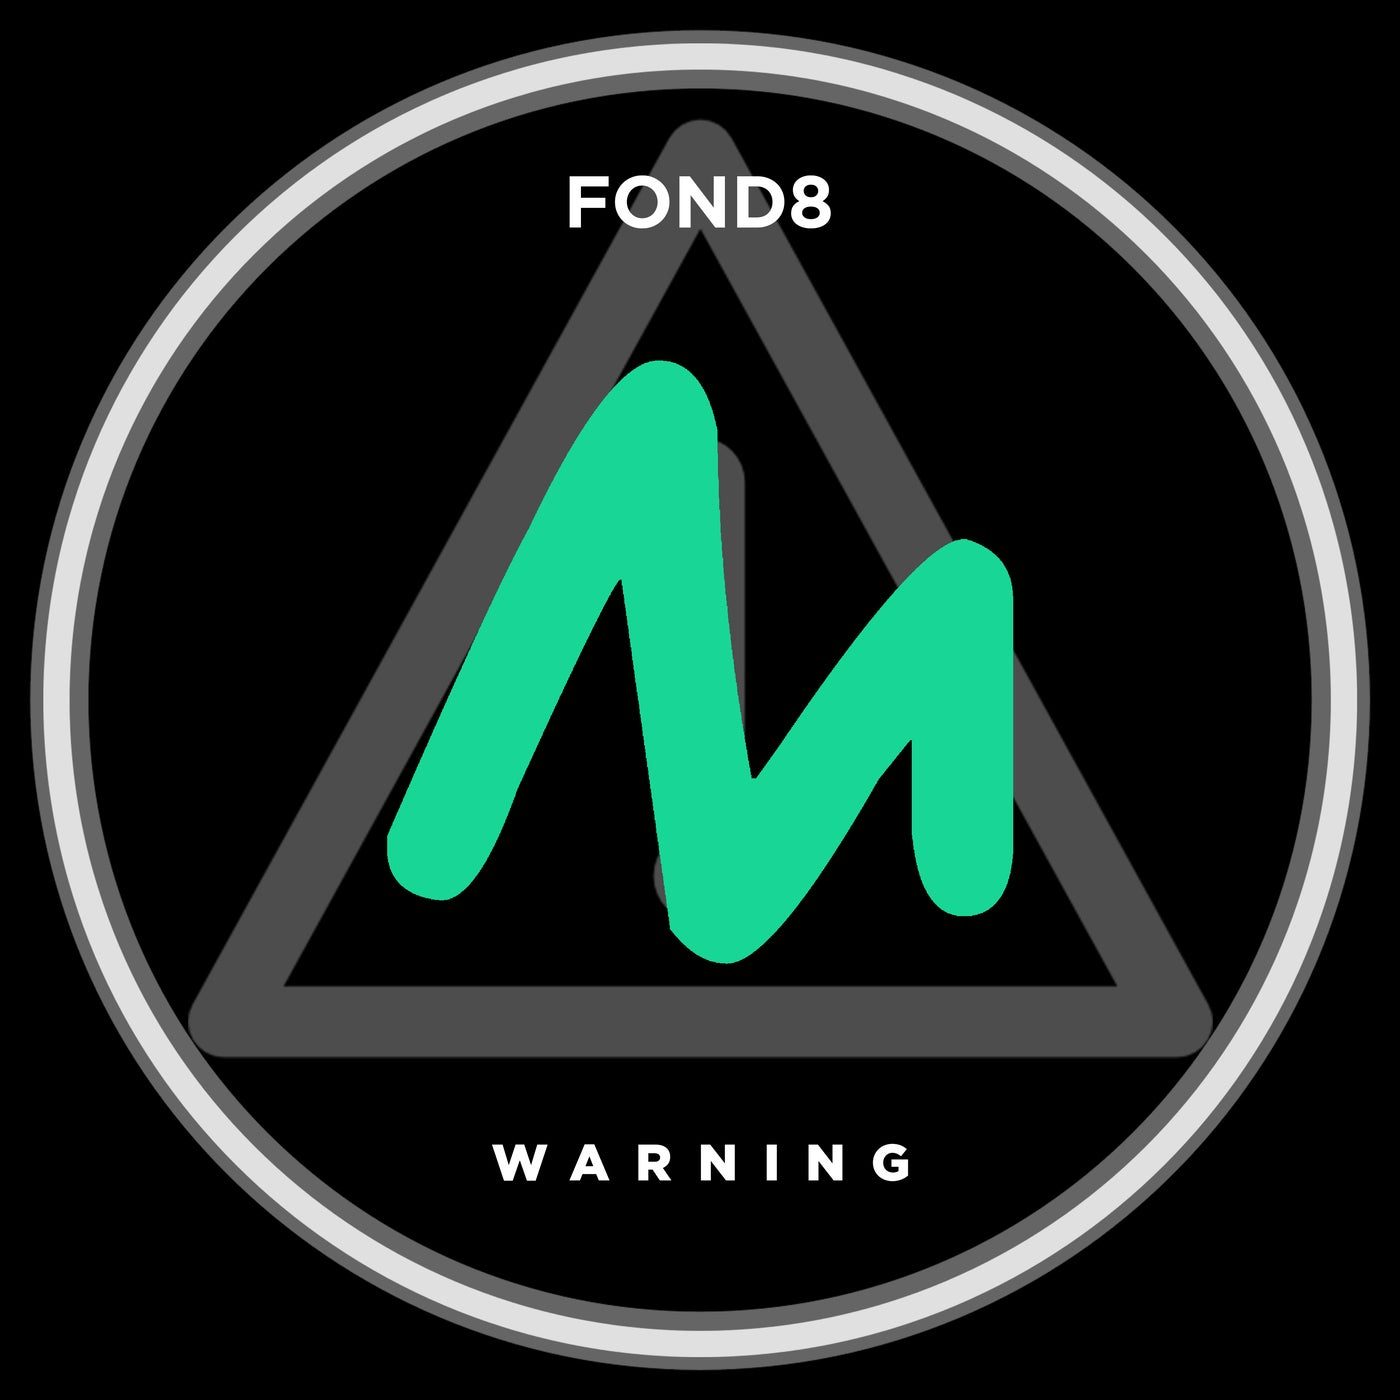 Fond8 - Warning [10194667]